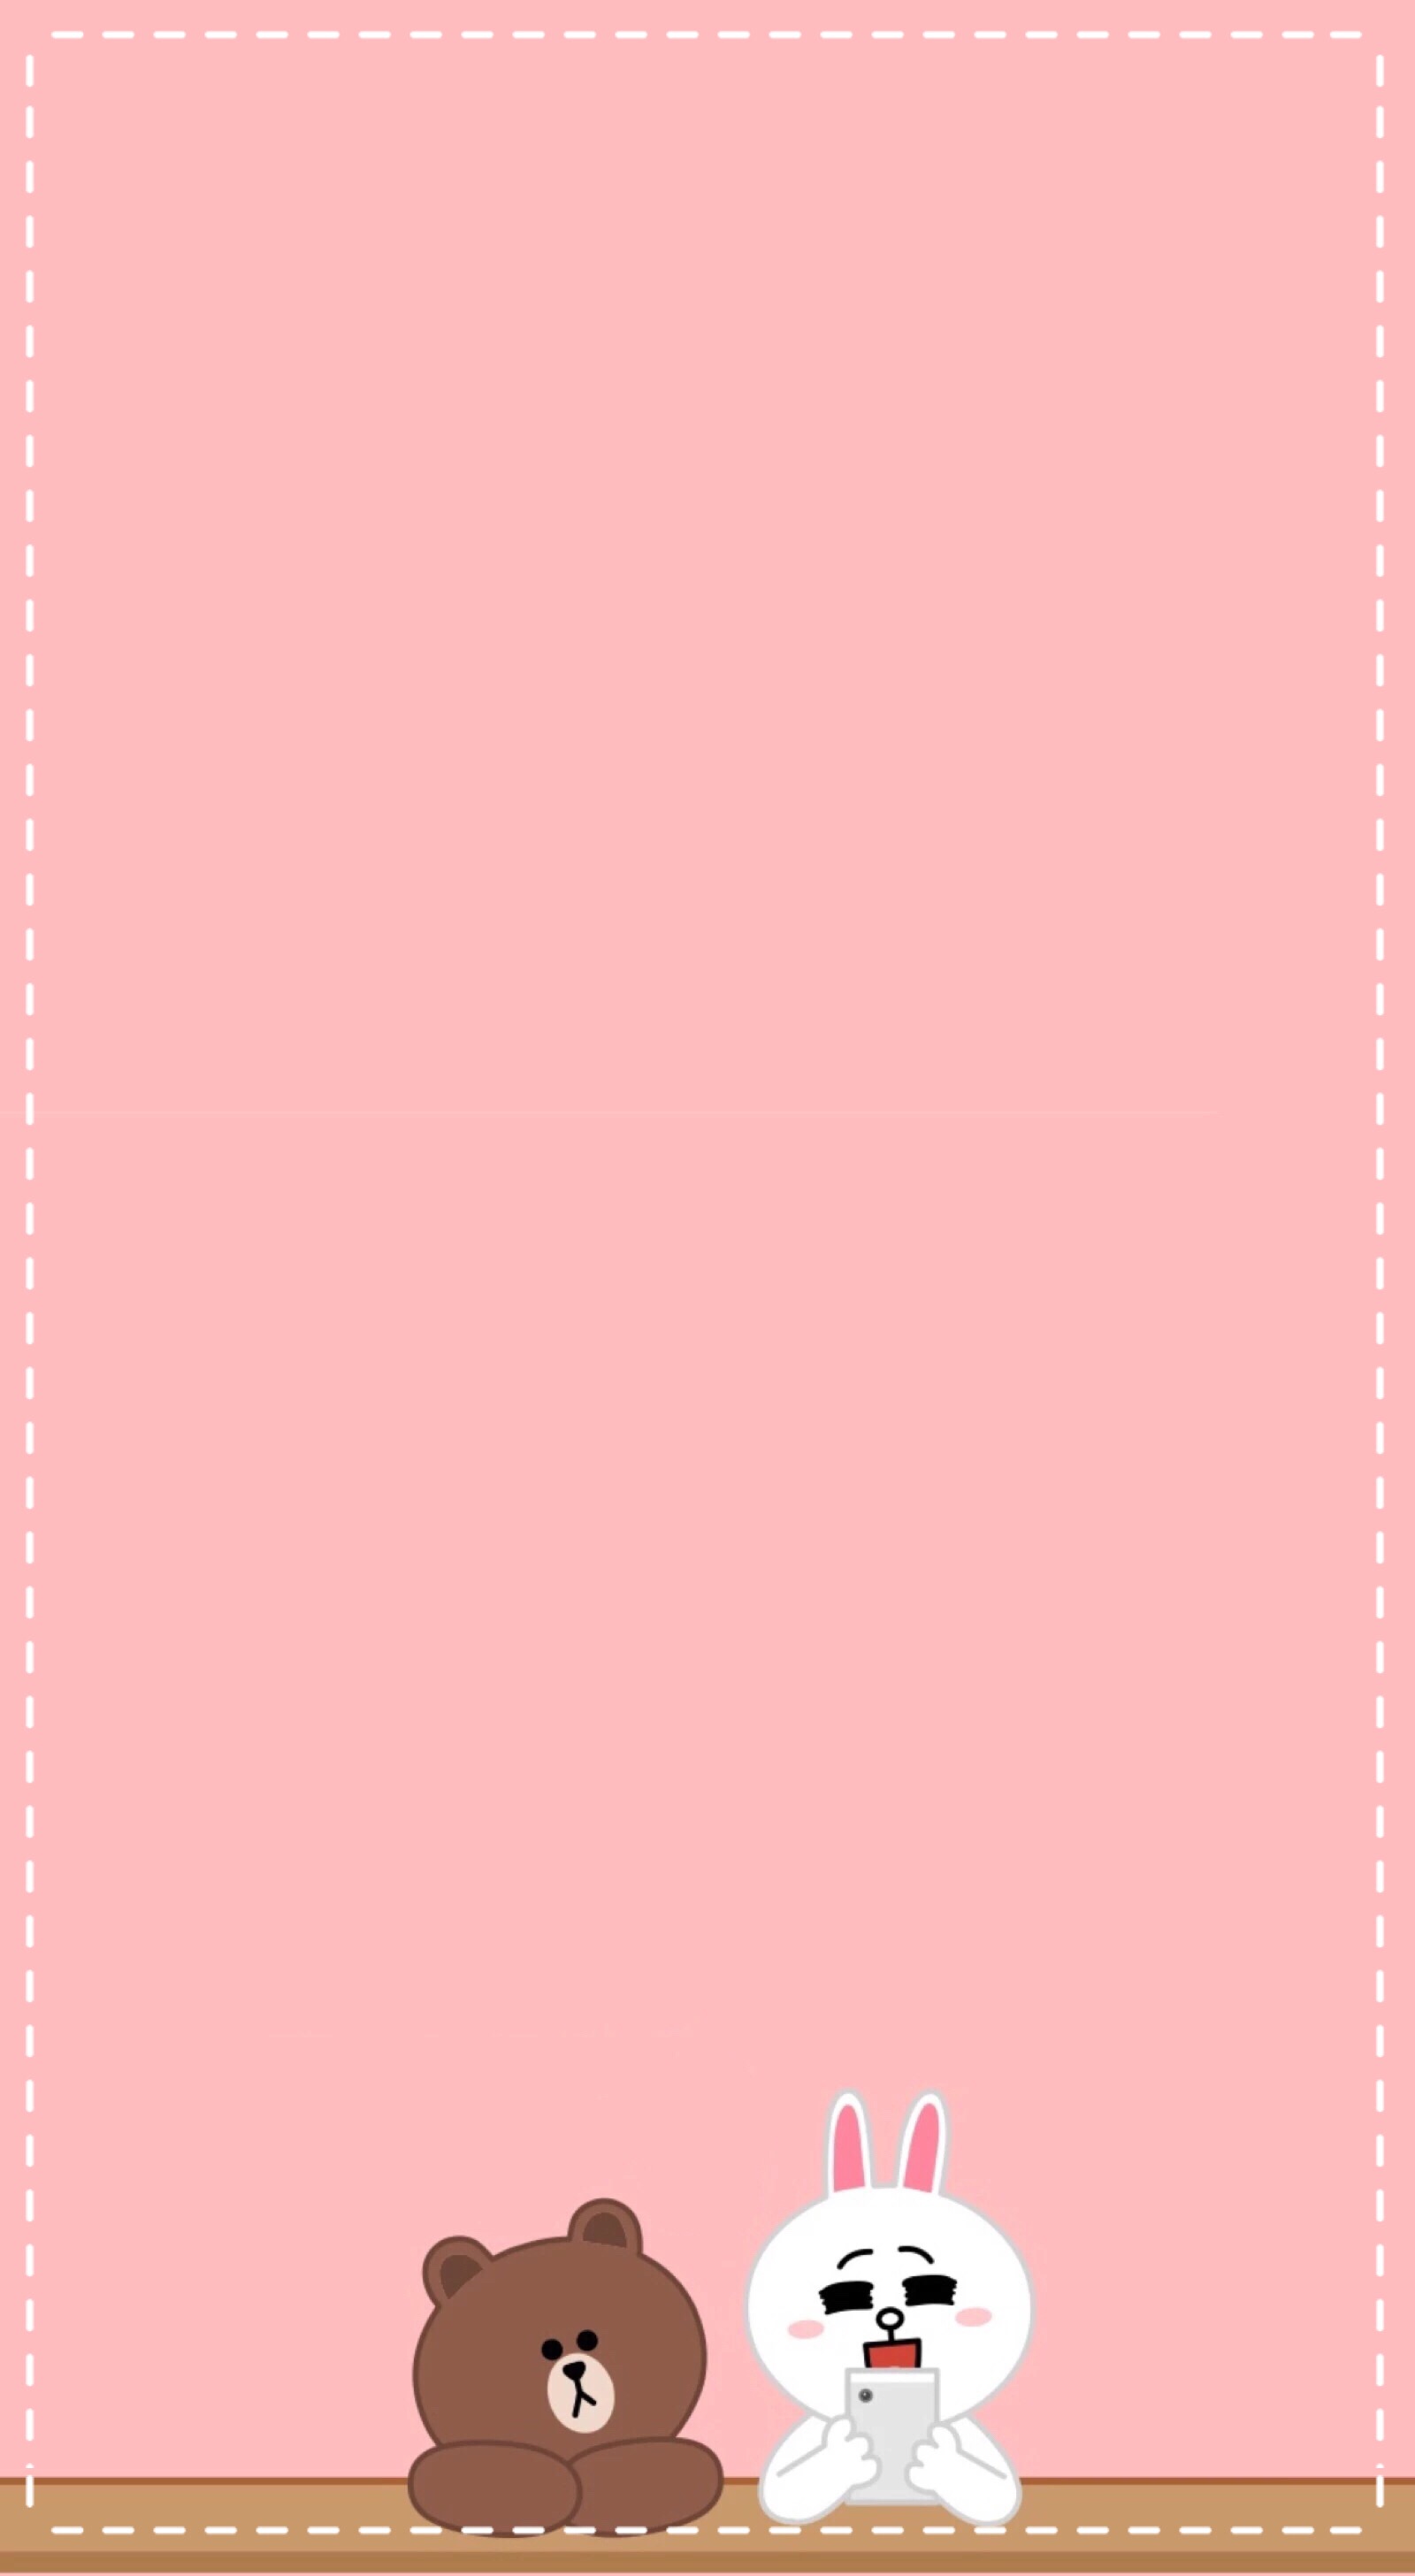 纯淡粉色手机壁纸高清图片